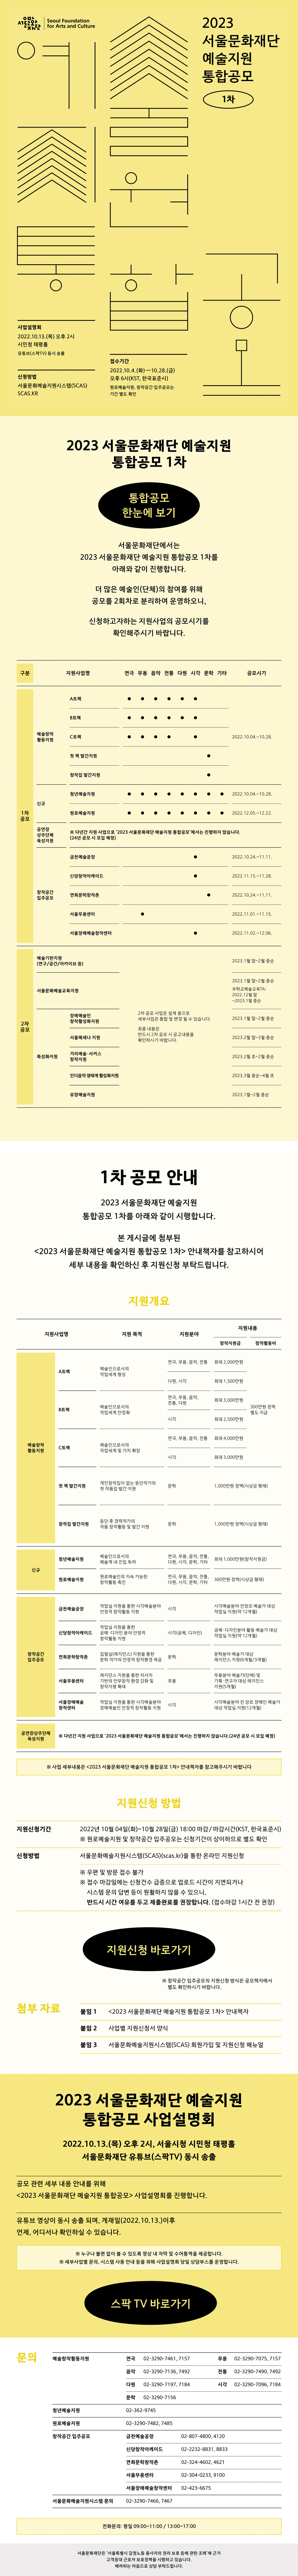 2023 서울문화재단 예술지원 통합공모 1차 웹자보